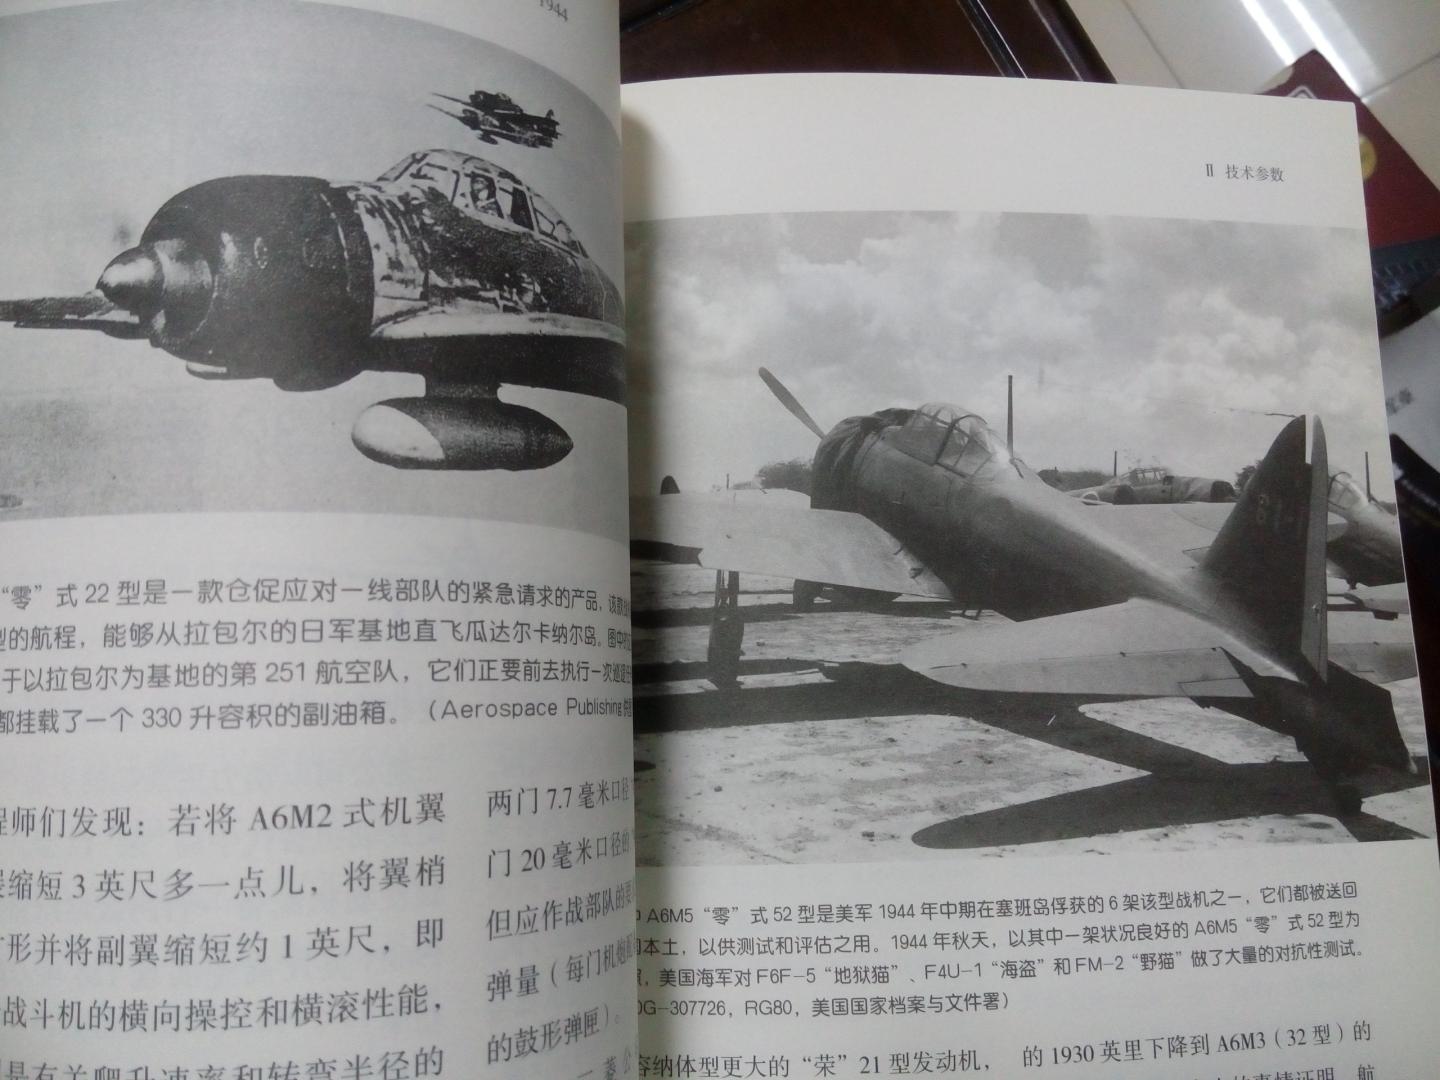 该书对于二战中两种最有影响力的舰载战斗机作了很好的对比，有收藏价值。